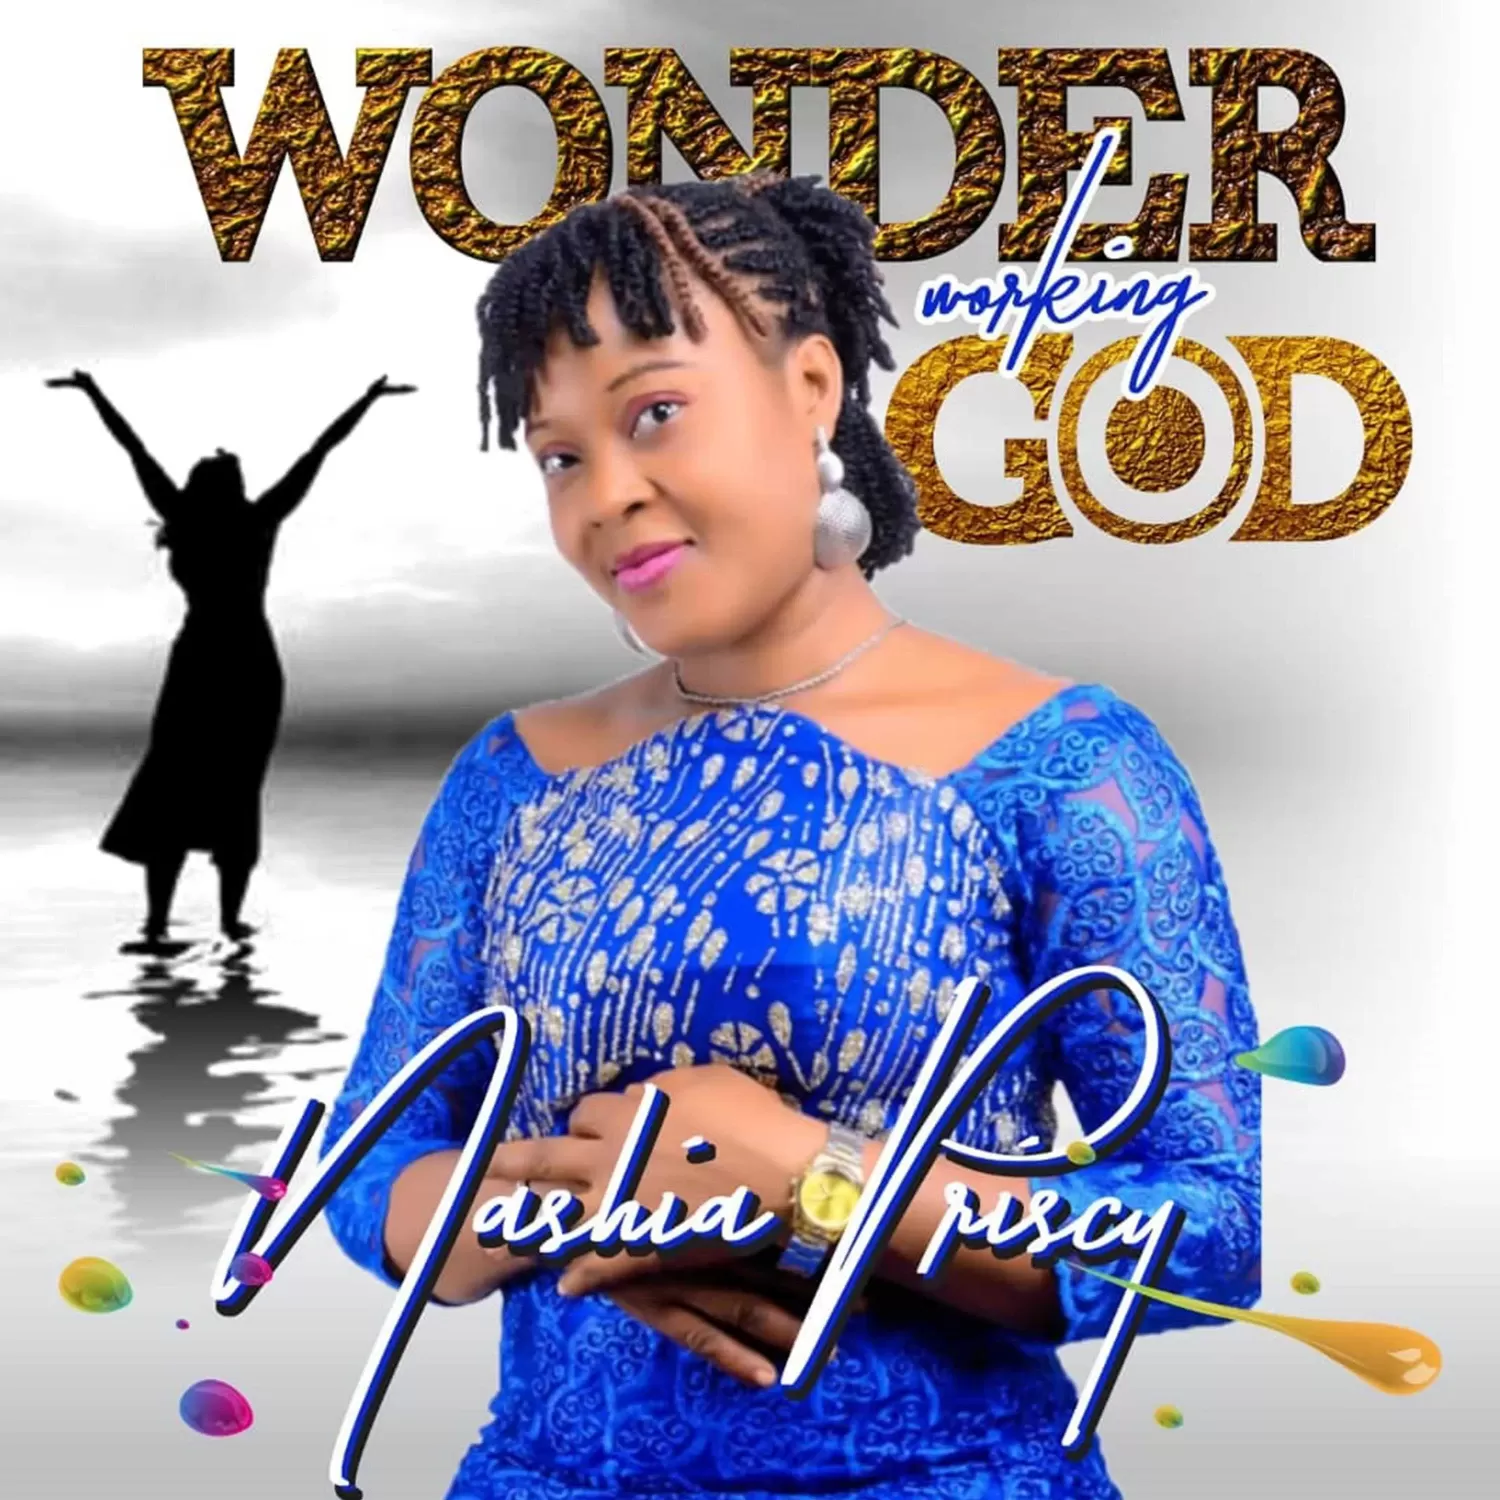 Nashia Priscy - Wonder working God